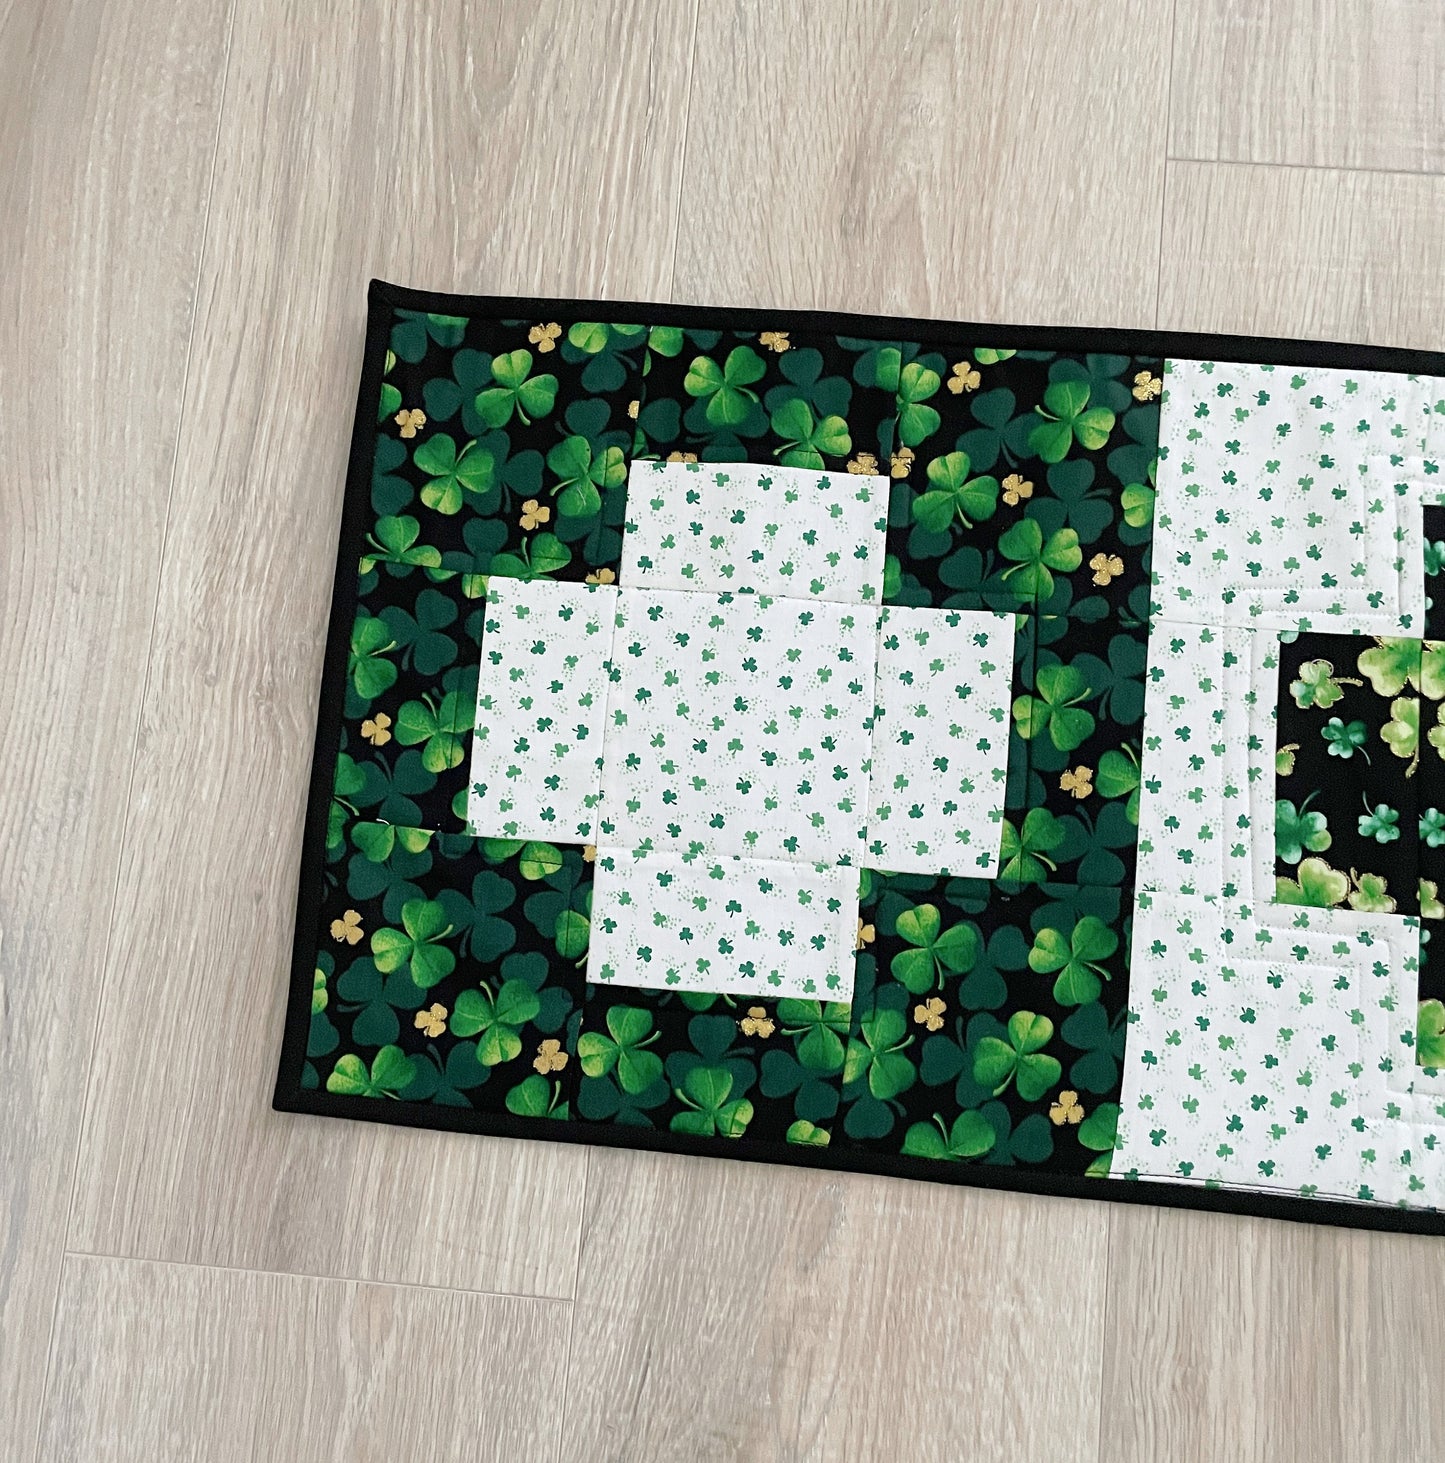 Handmade Green and White St. Patrick's Day Table Runner, Modern Cross Patchwork Design